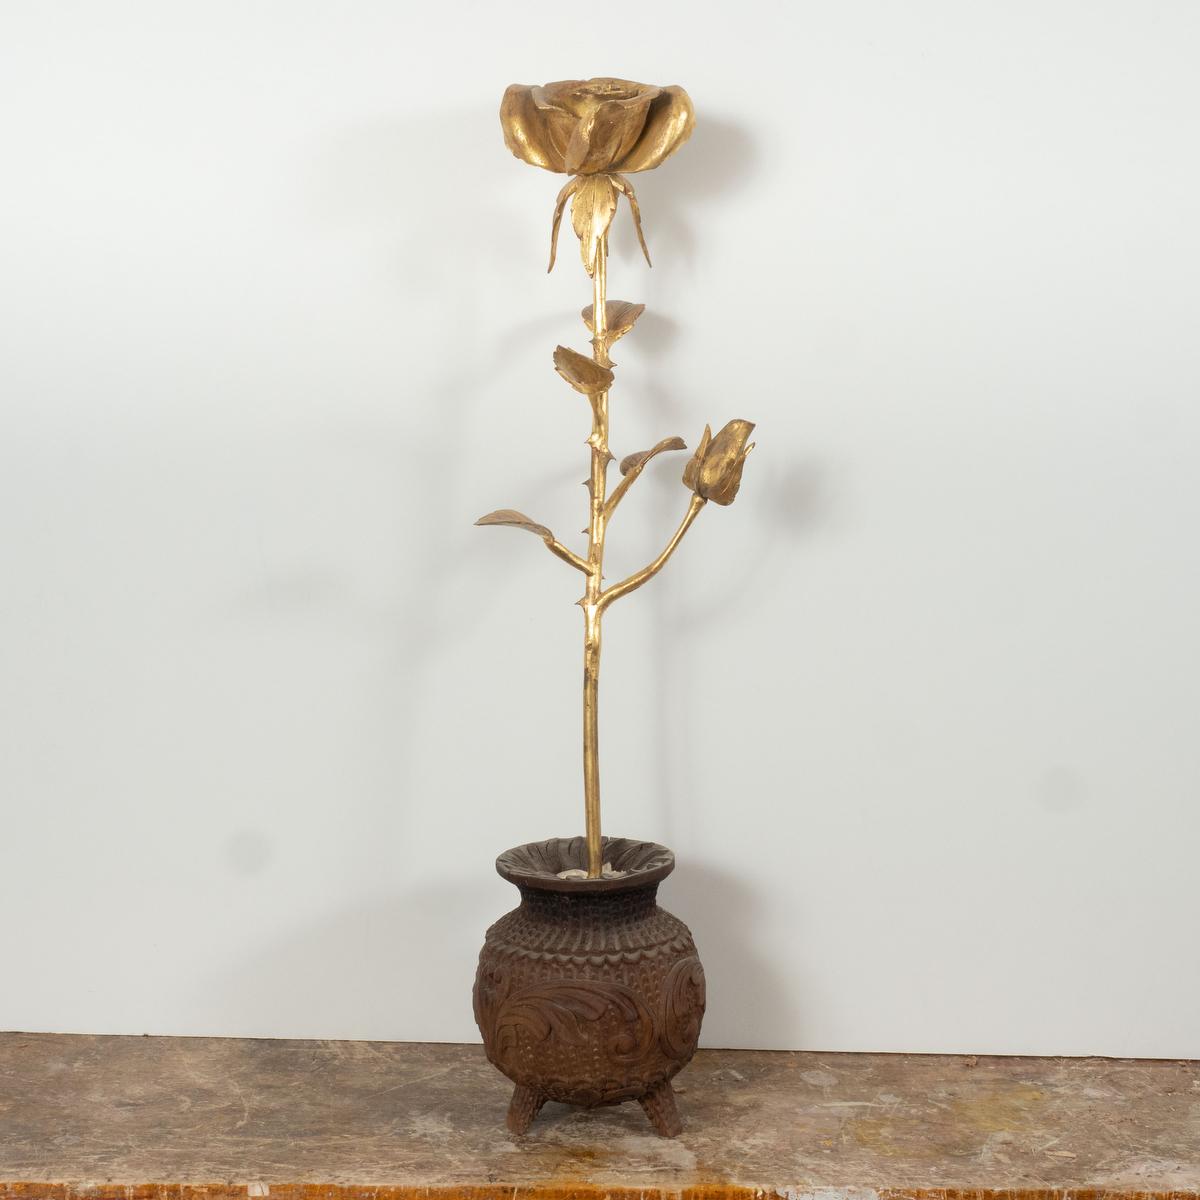 Sculpture en bois à la feuille d'or 22kt représentant une rose unique dans un pot, avec des détails exquis, réalisée par le maître ébéniste Carlos Villegas.